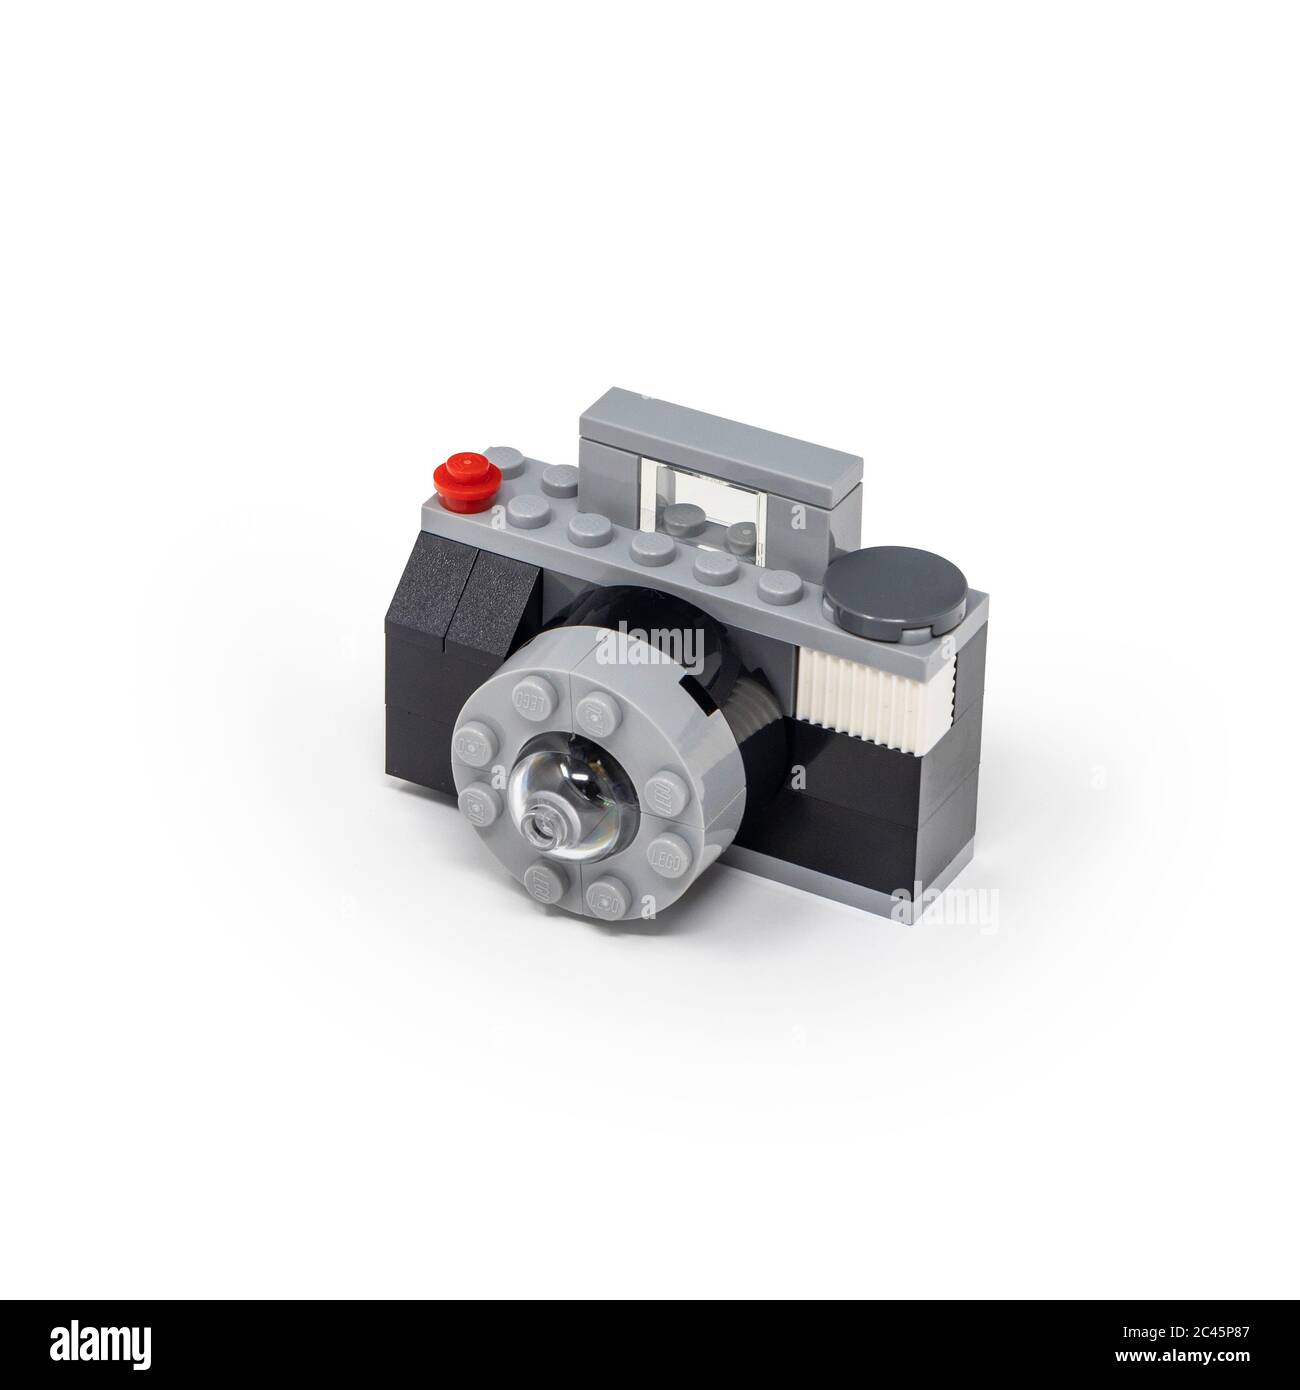 15 maggio 2019 - Roma, Italia - fotocamera Lego realizzata in blocchi da  costruzione, isolata su bianco. Concetto di lavoro, fotografia, fotografo,  foto, foto, foto, raffle Foto stock - Alamy